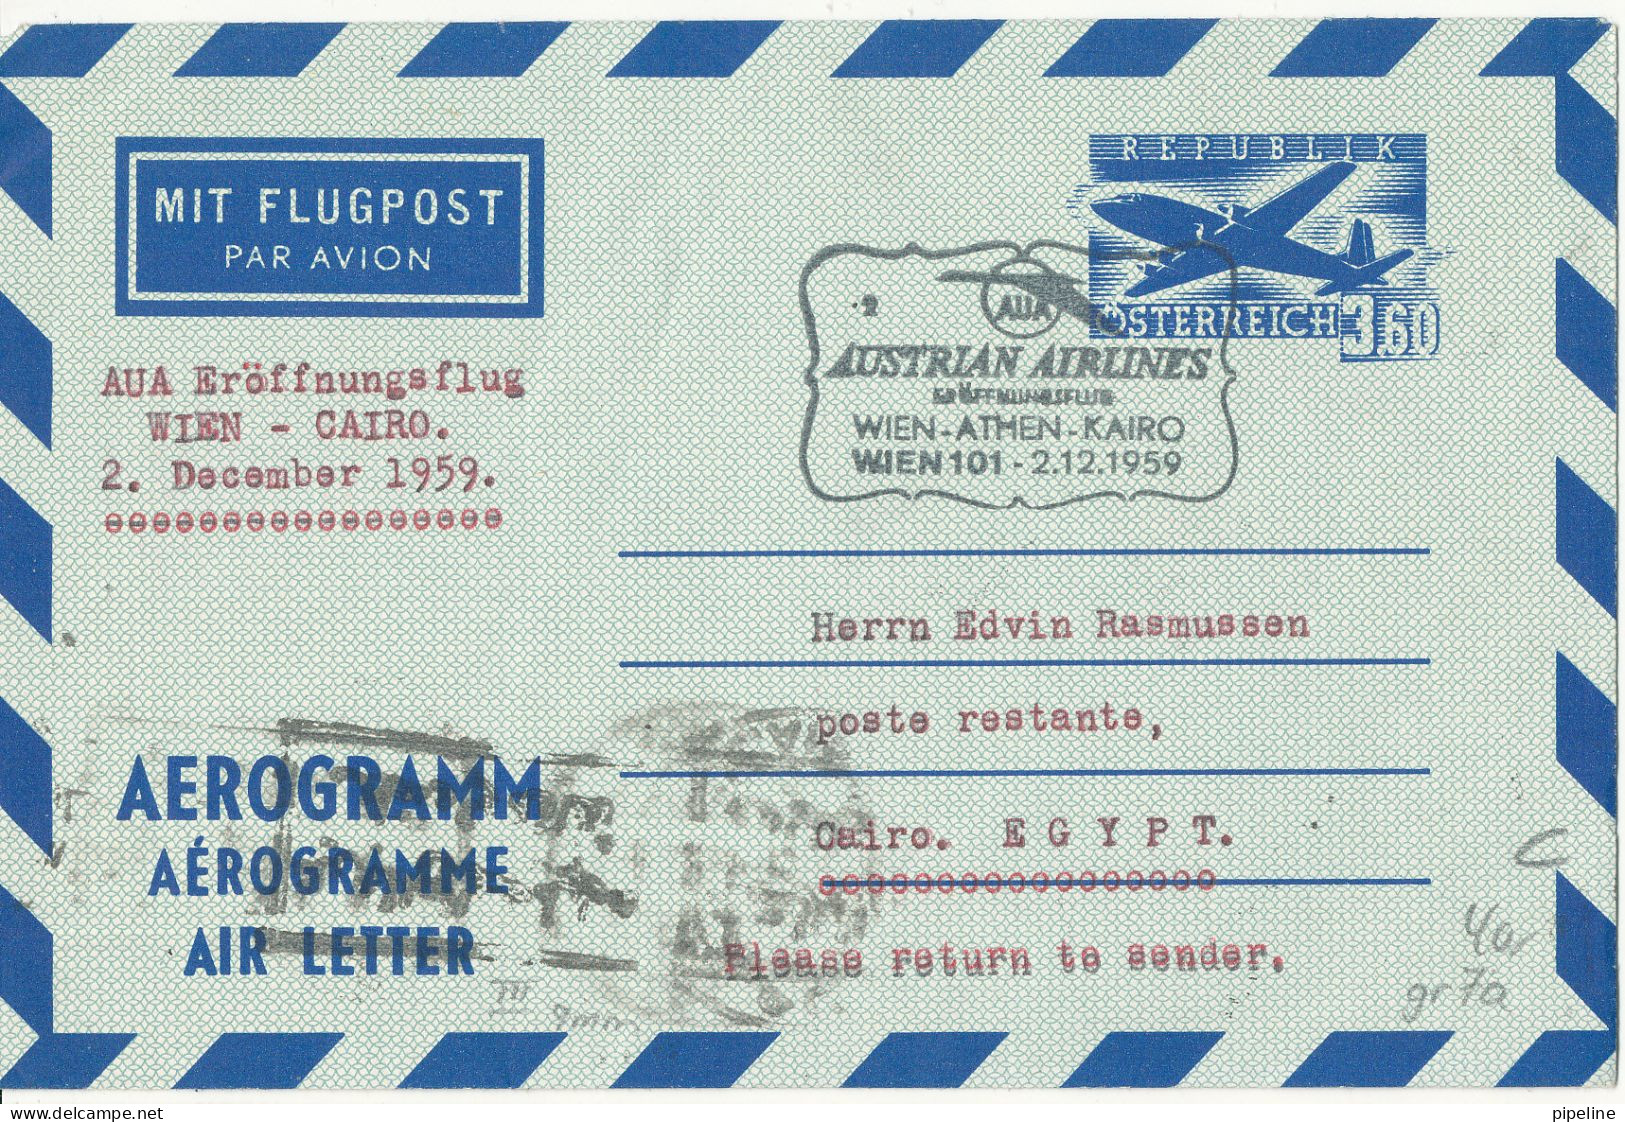 Austria Aerogramme First Flight Austrian Airlines Wien - Athen - Cairo -Wien 2-12-1959 - Erst- U. Sonderflugbriefe